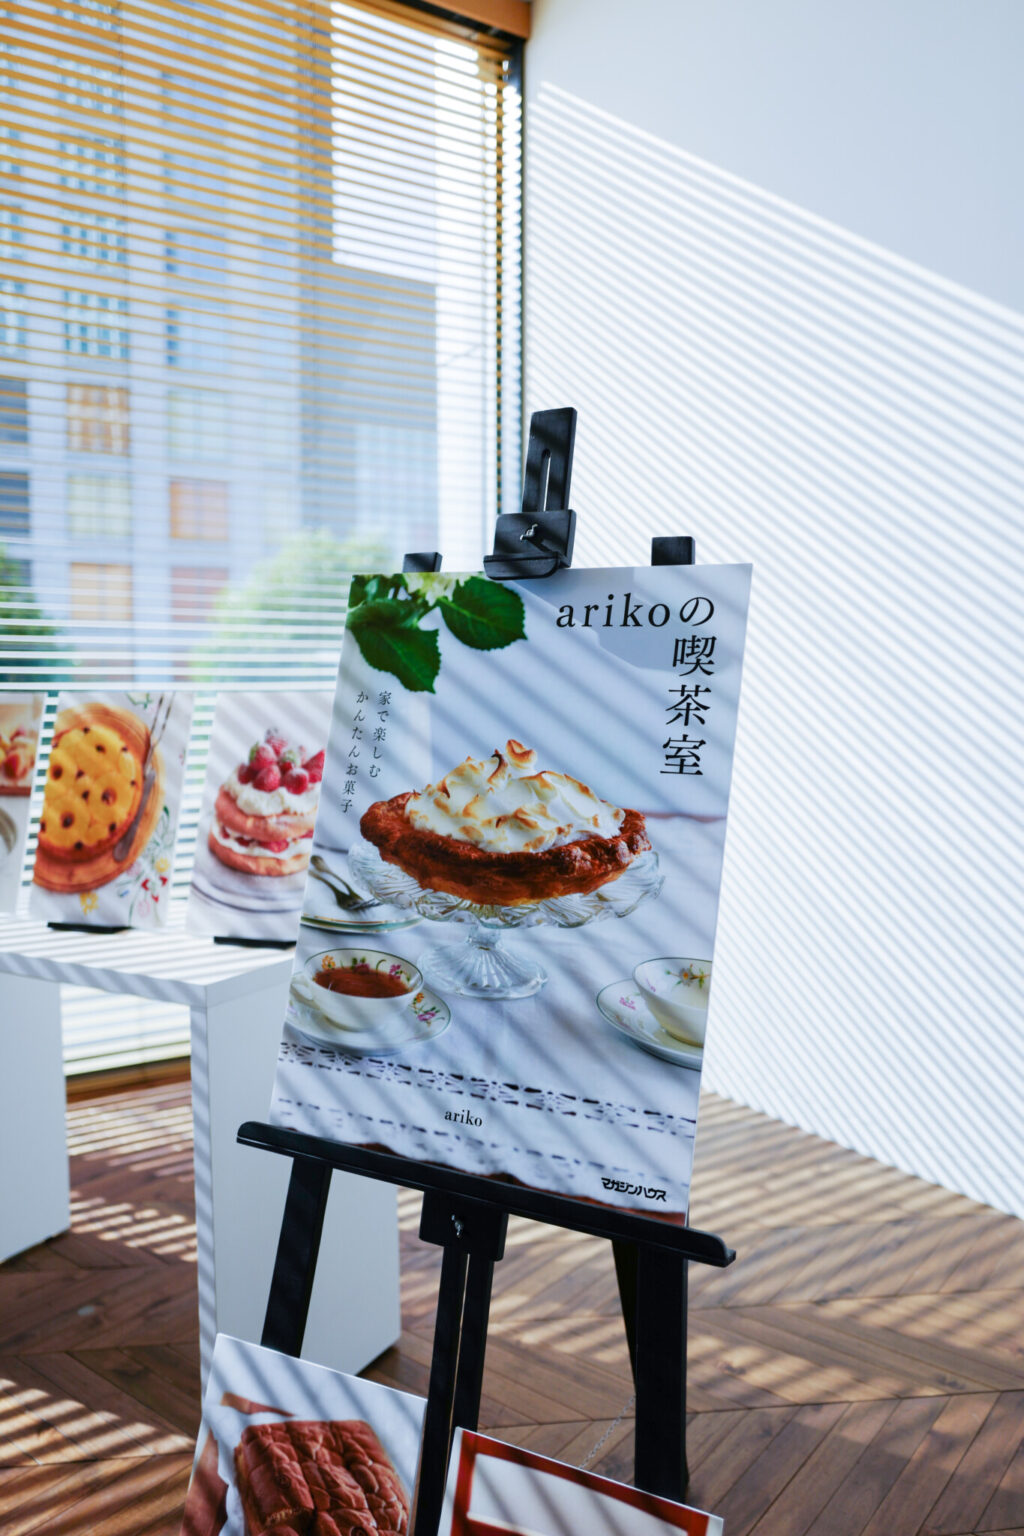 arikoの喫茶室 家で楽しむかんたんお菓子